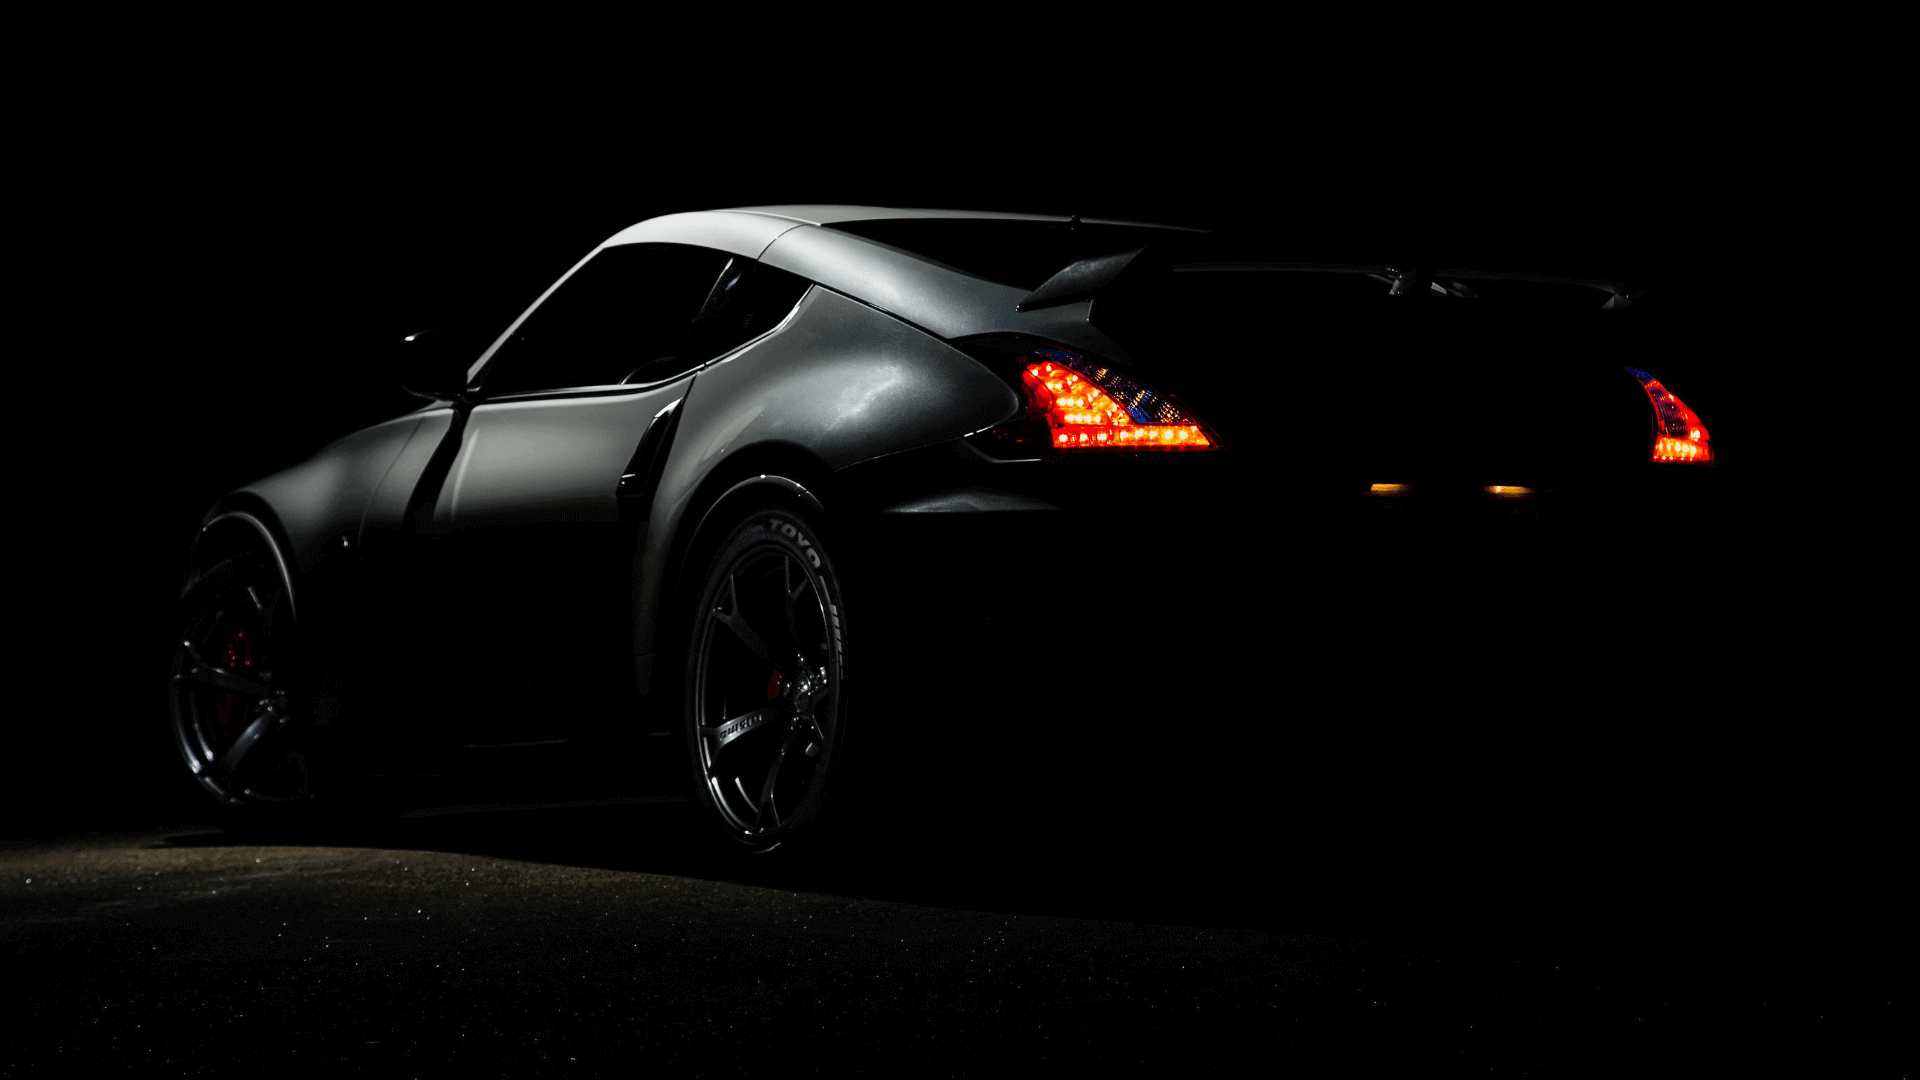 car in dark room